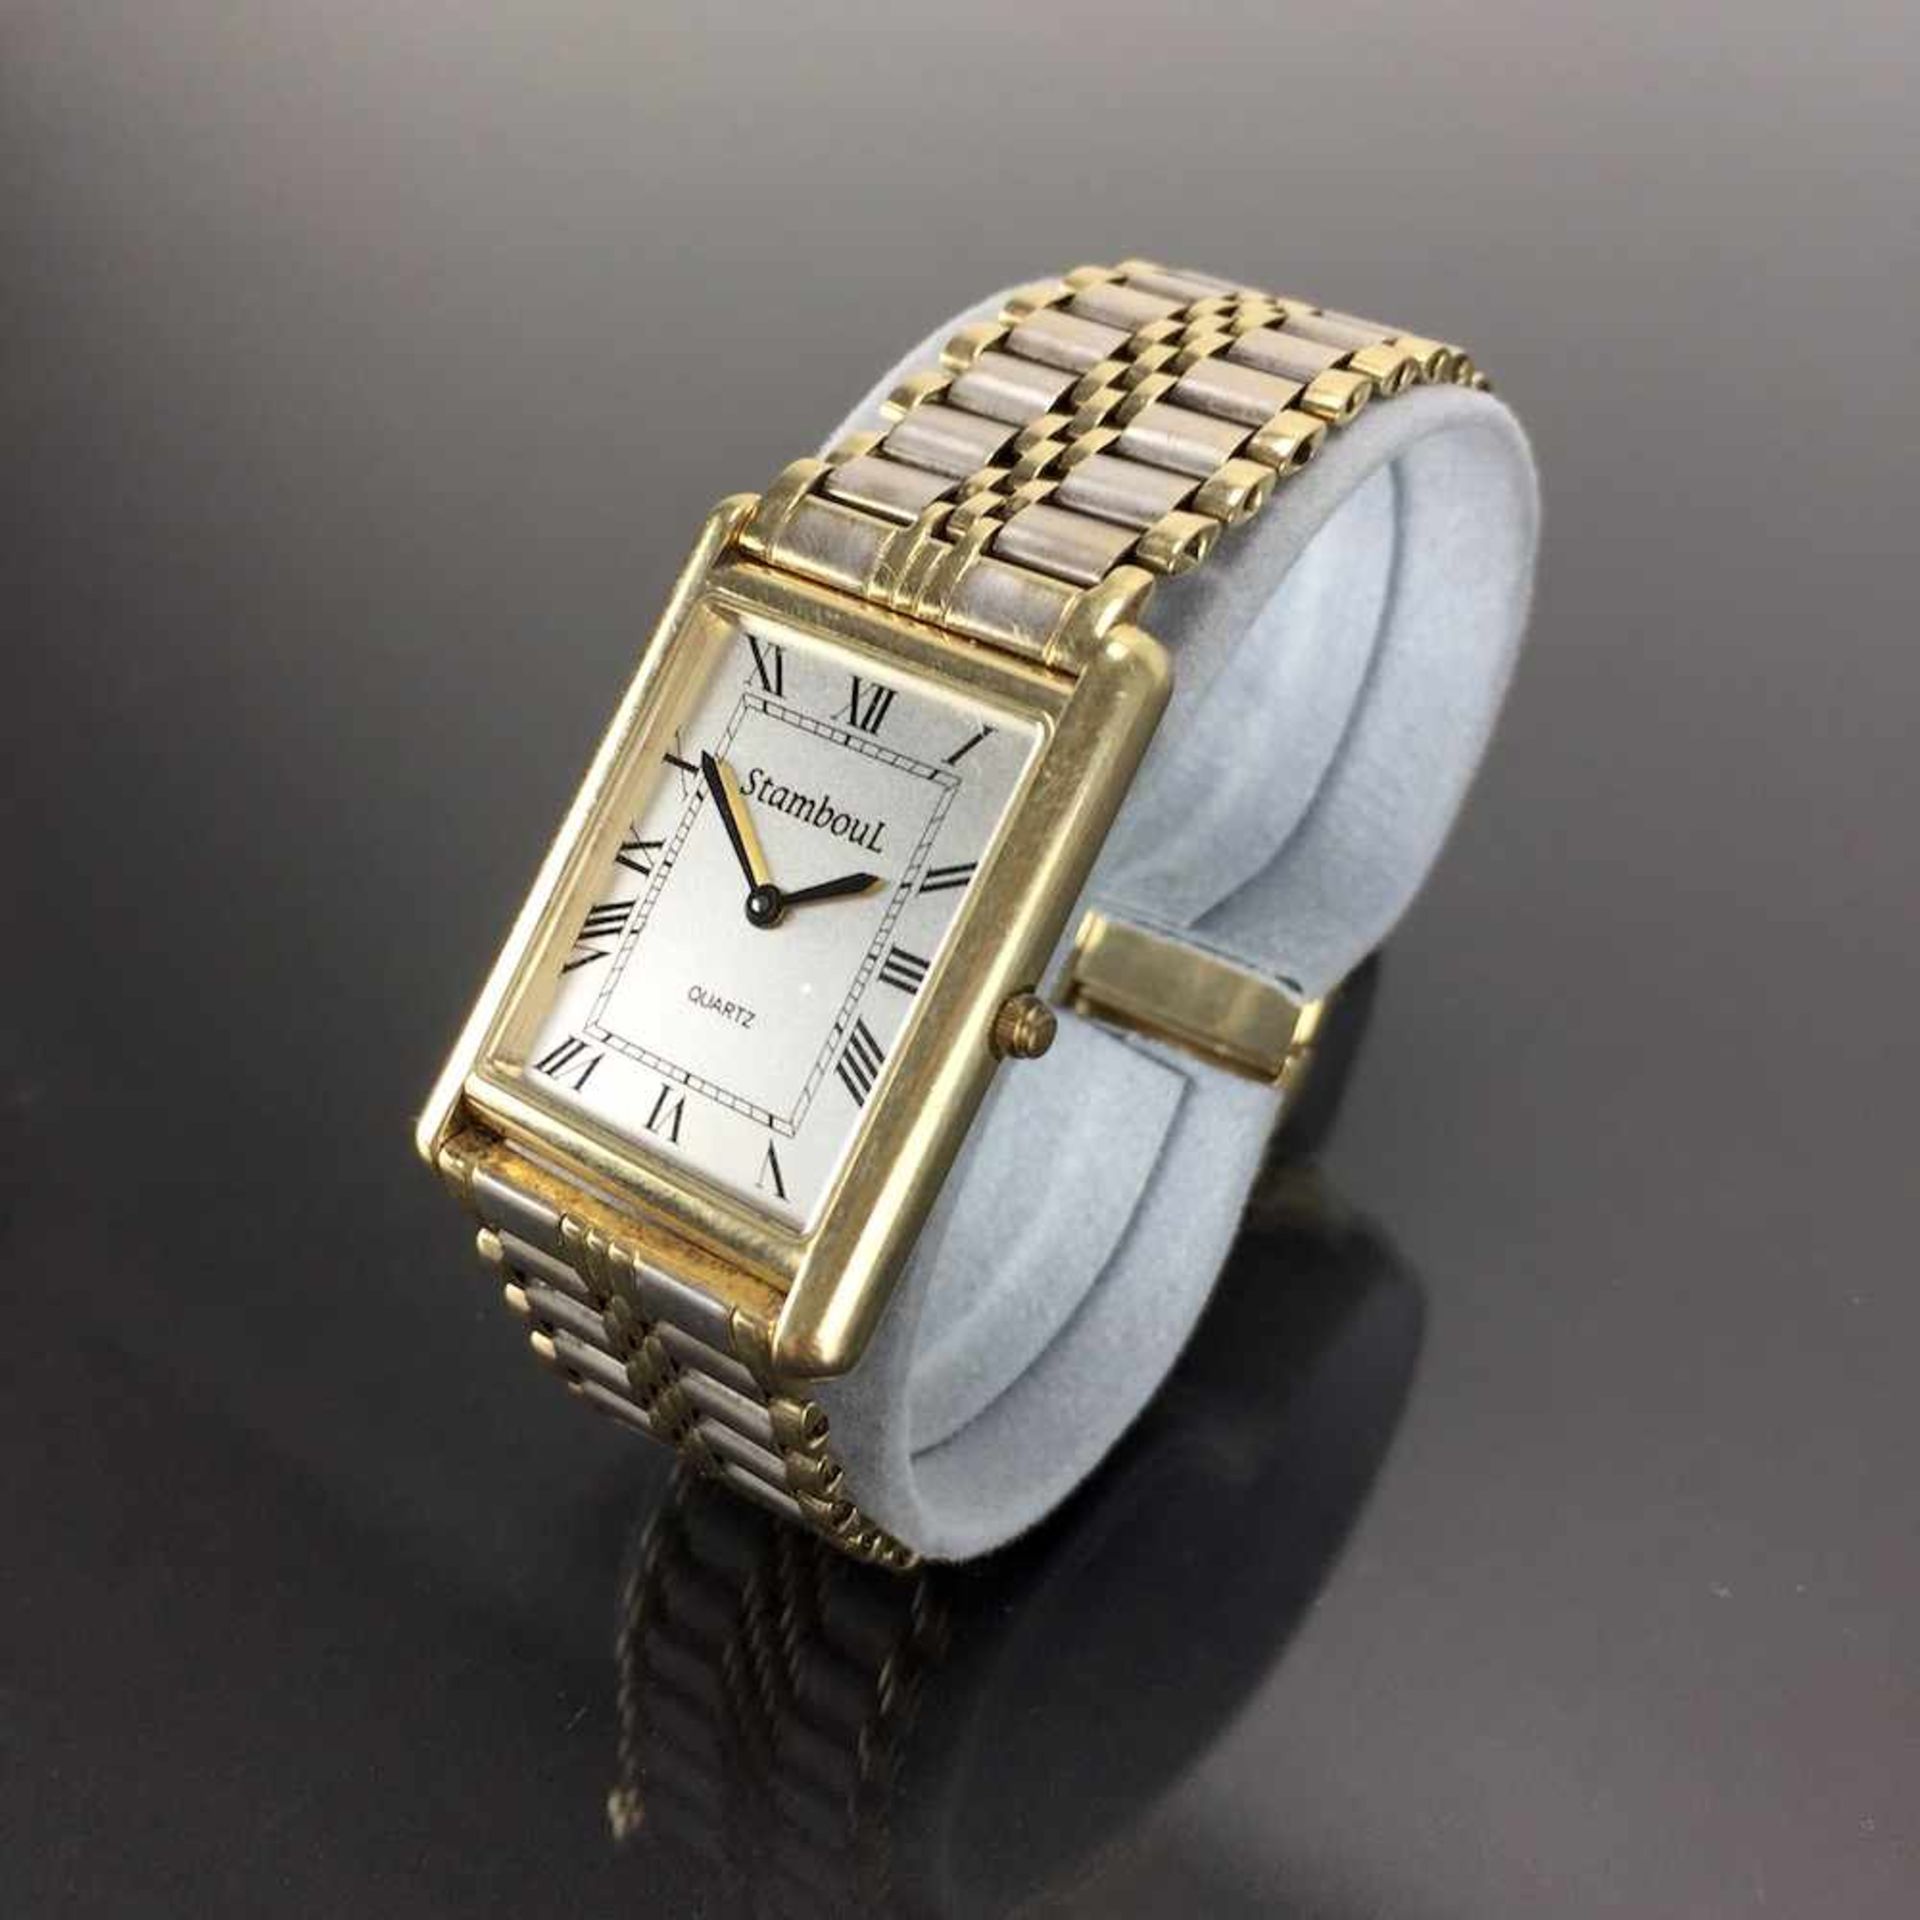 Schwere Herren Armbanduhr: Gold 585 / 14 K.Gemarkt "StambouL | Quartz". Rechteckiges Gehäuse aus - Image 3 of 4